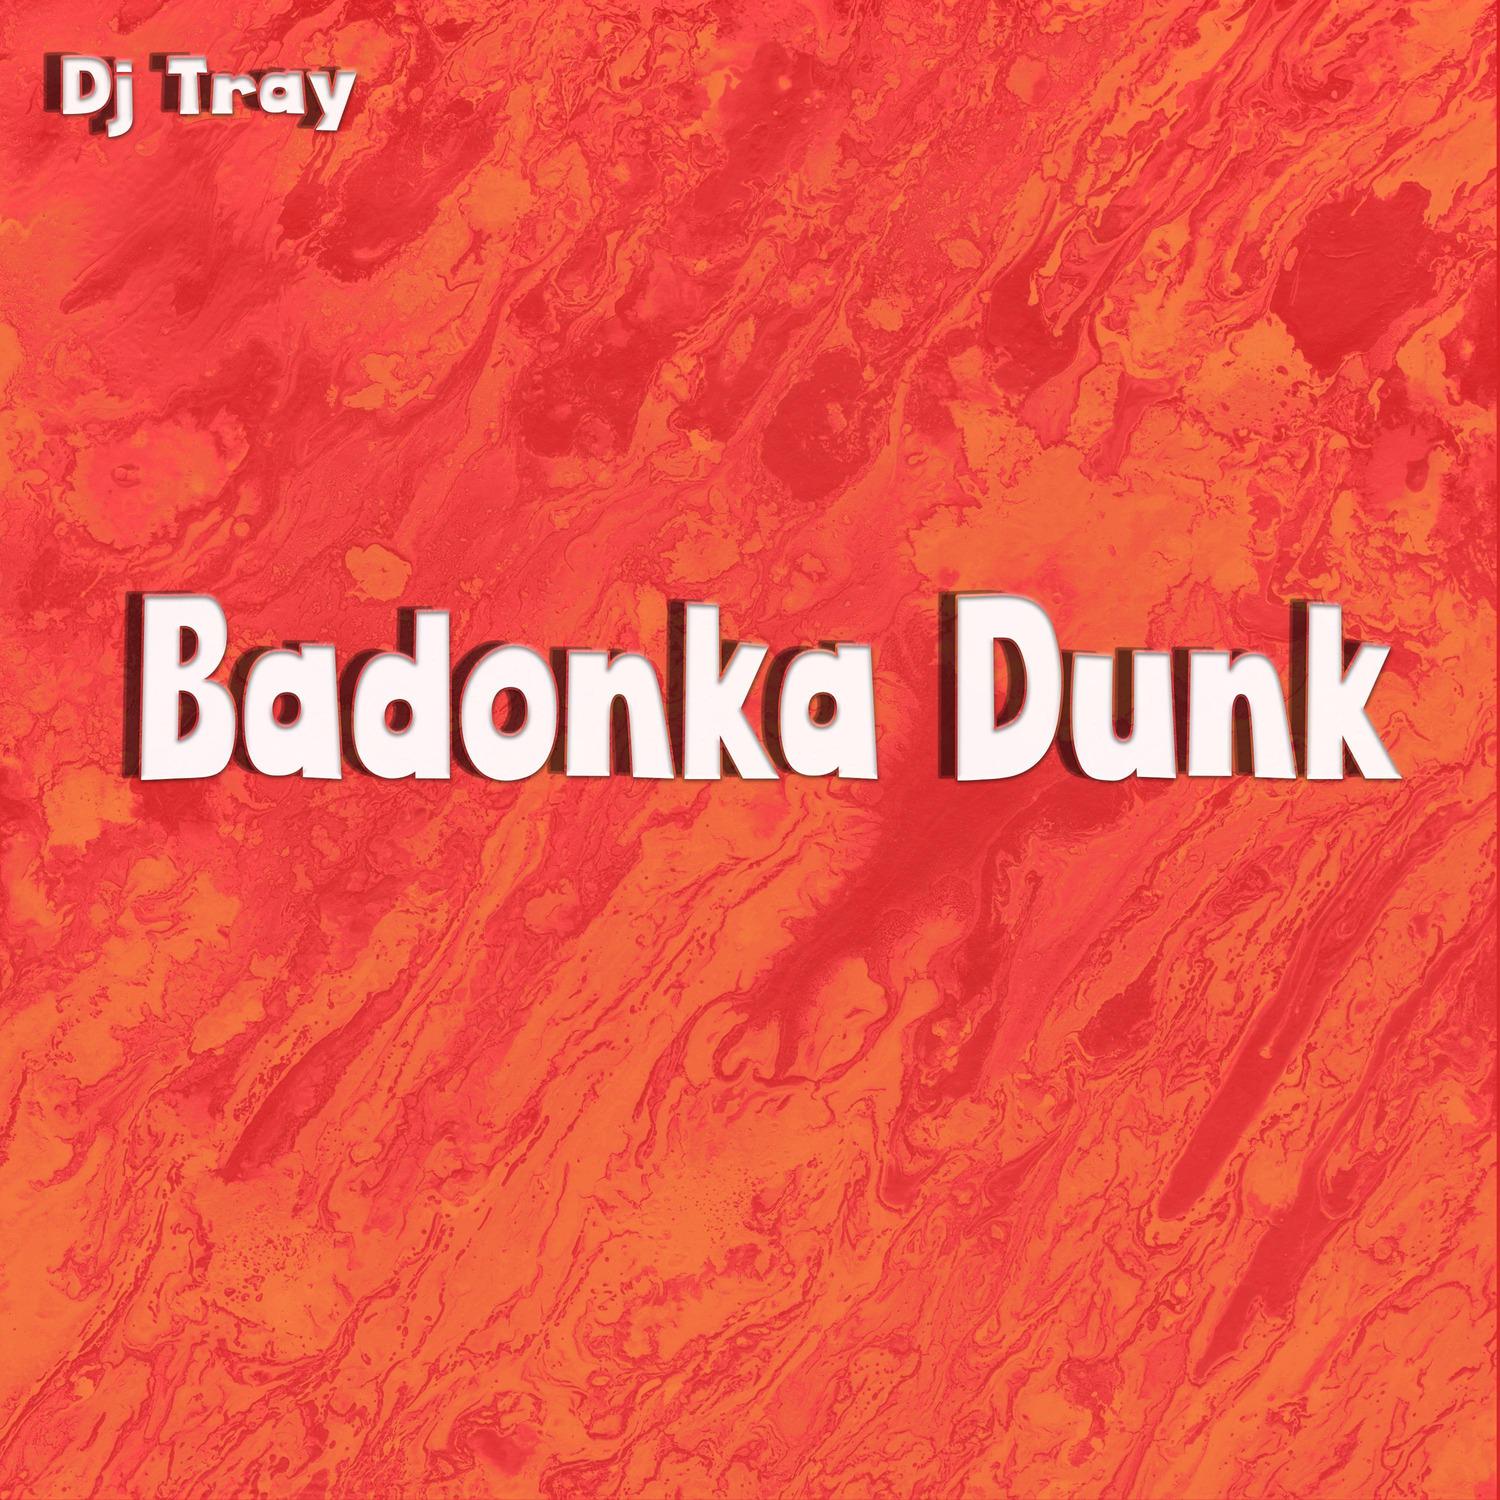 DJ Tray - Badonka Dunk